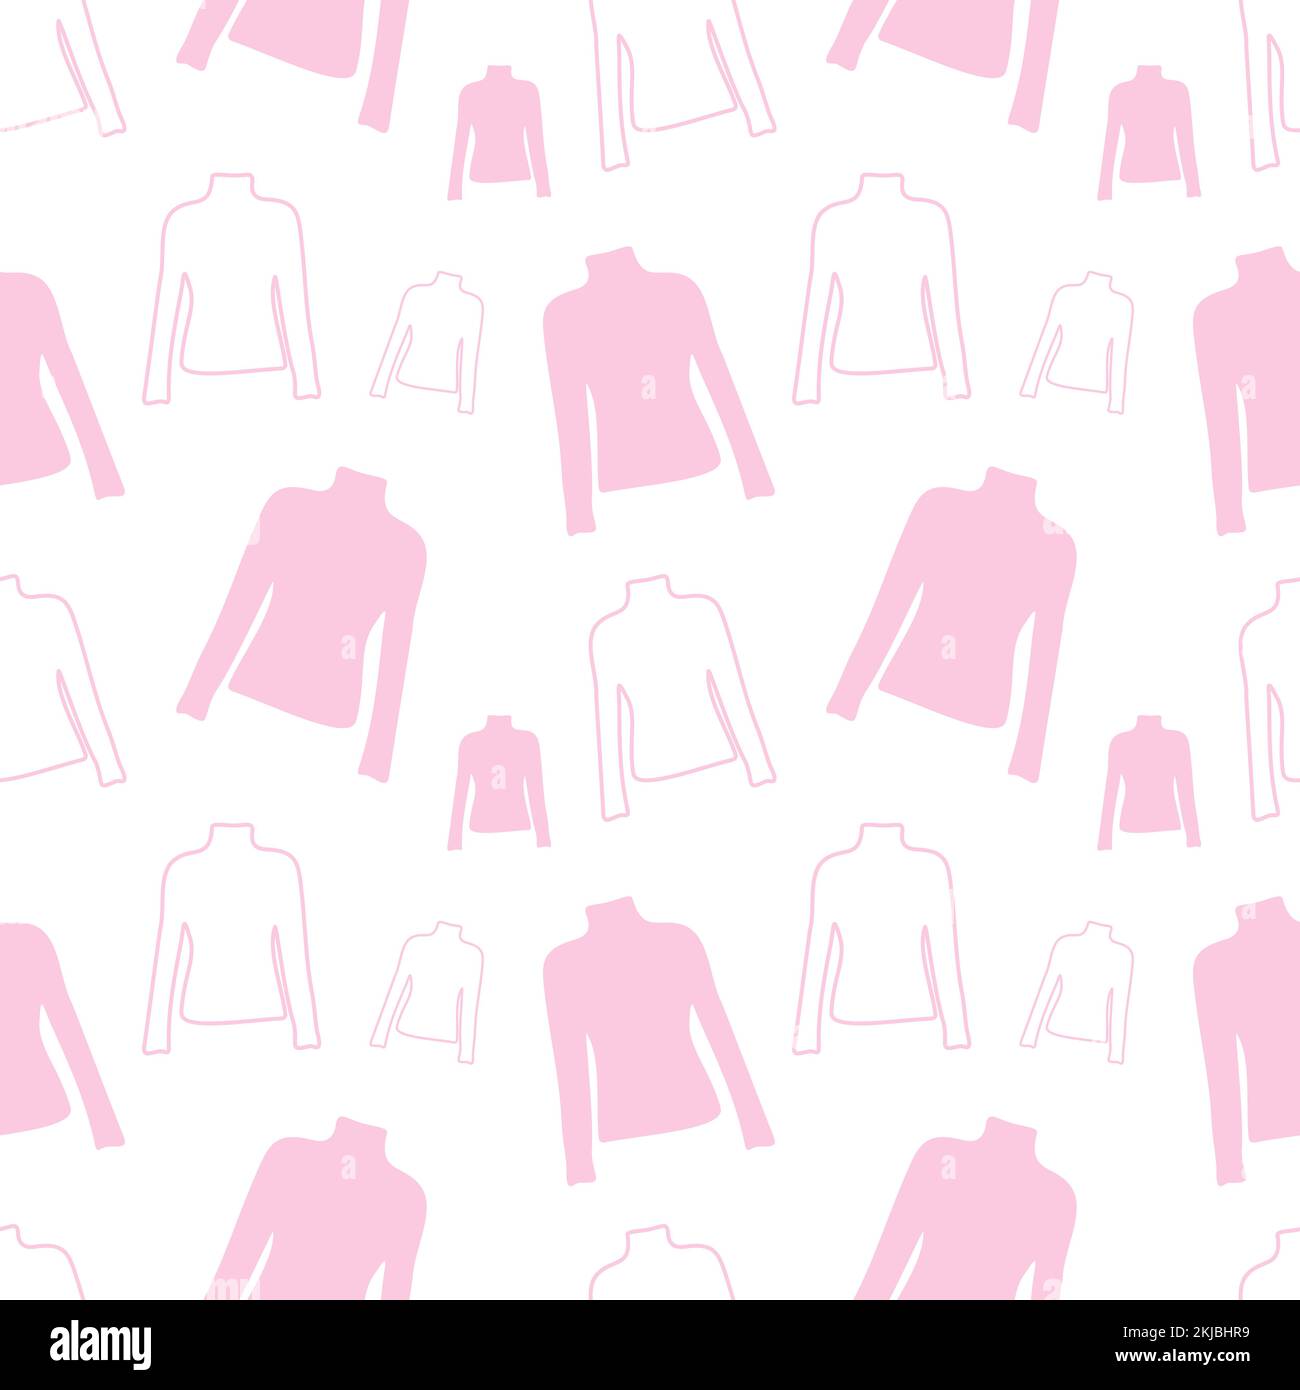 Endloses Muster aus Kurzarm-T-Shirt in trendigen pinkfarbenen Farbtönen. Abstrakter Hintergrund. Sich Wiederholende Textur. Design drucken. Layout für Geschenkpapier, Poster, Postkarten, Gruß- oder Preisetiketten, Banner Stock Vektor